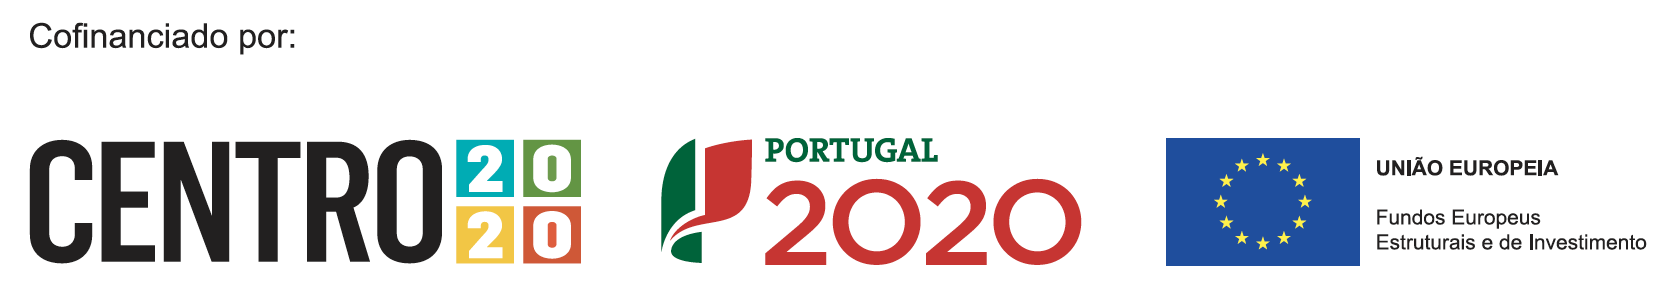 Projeto 2020